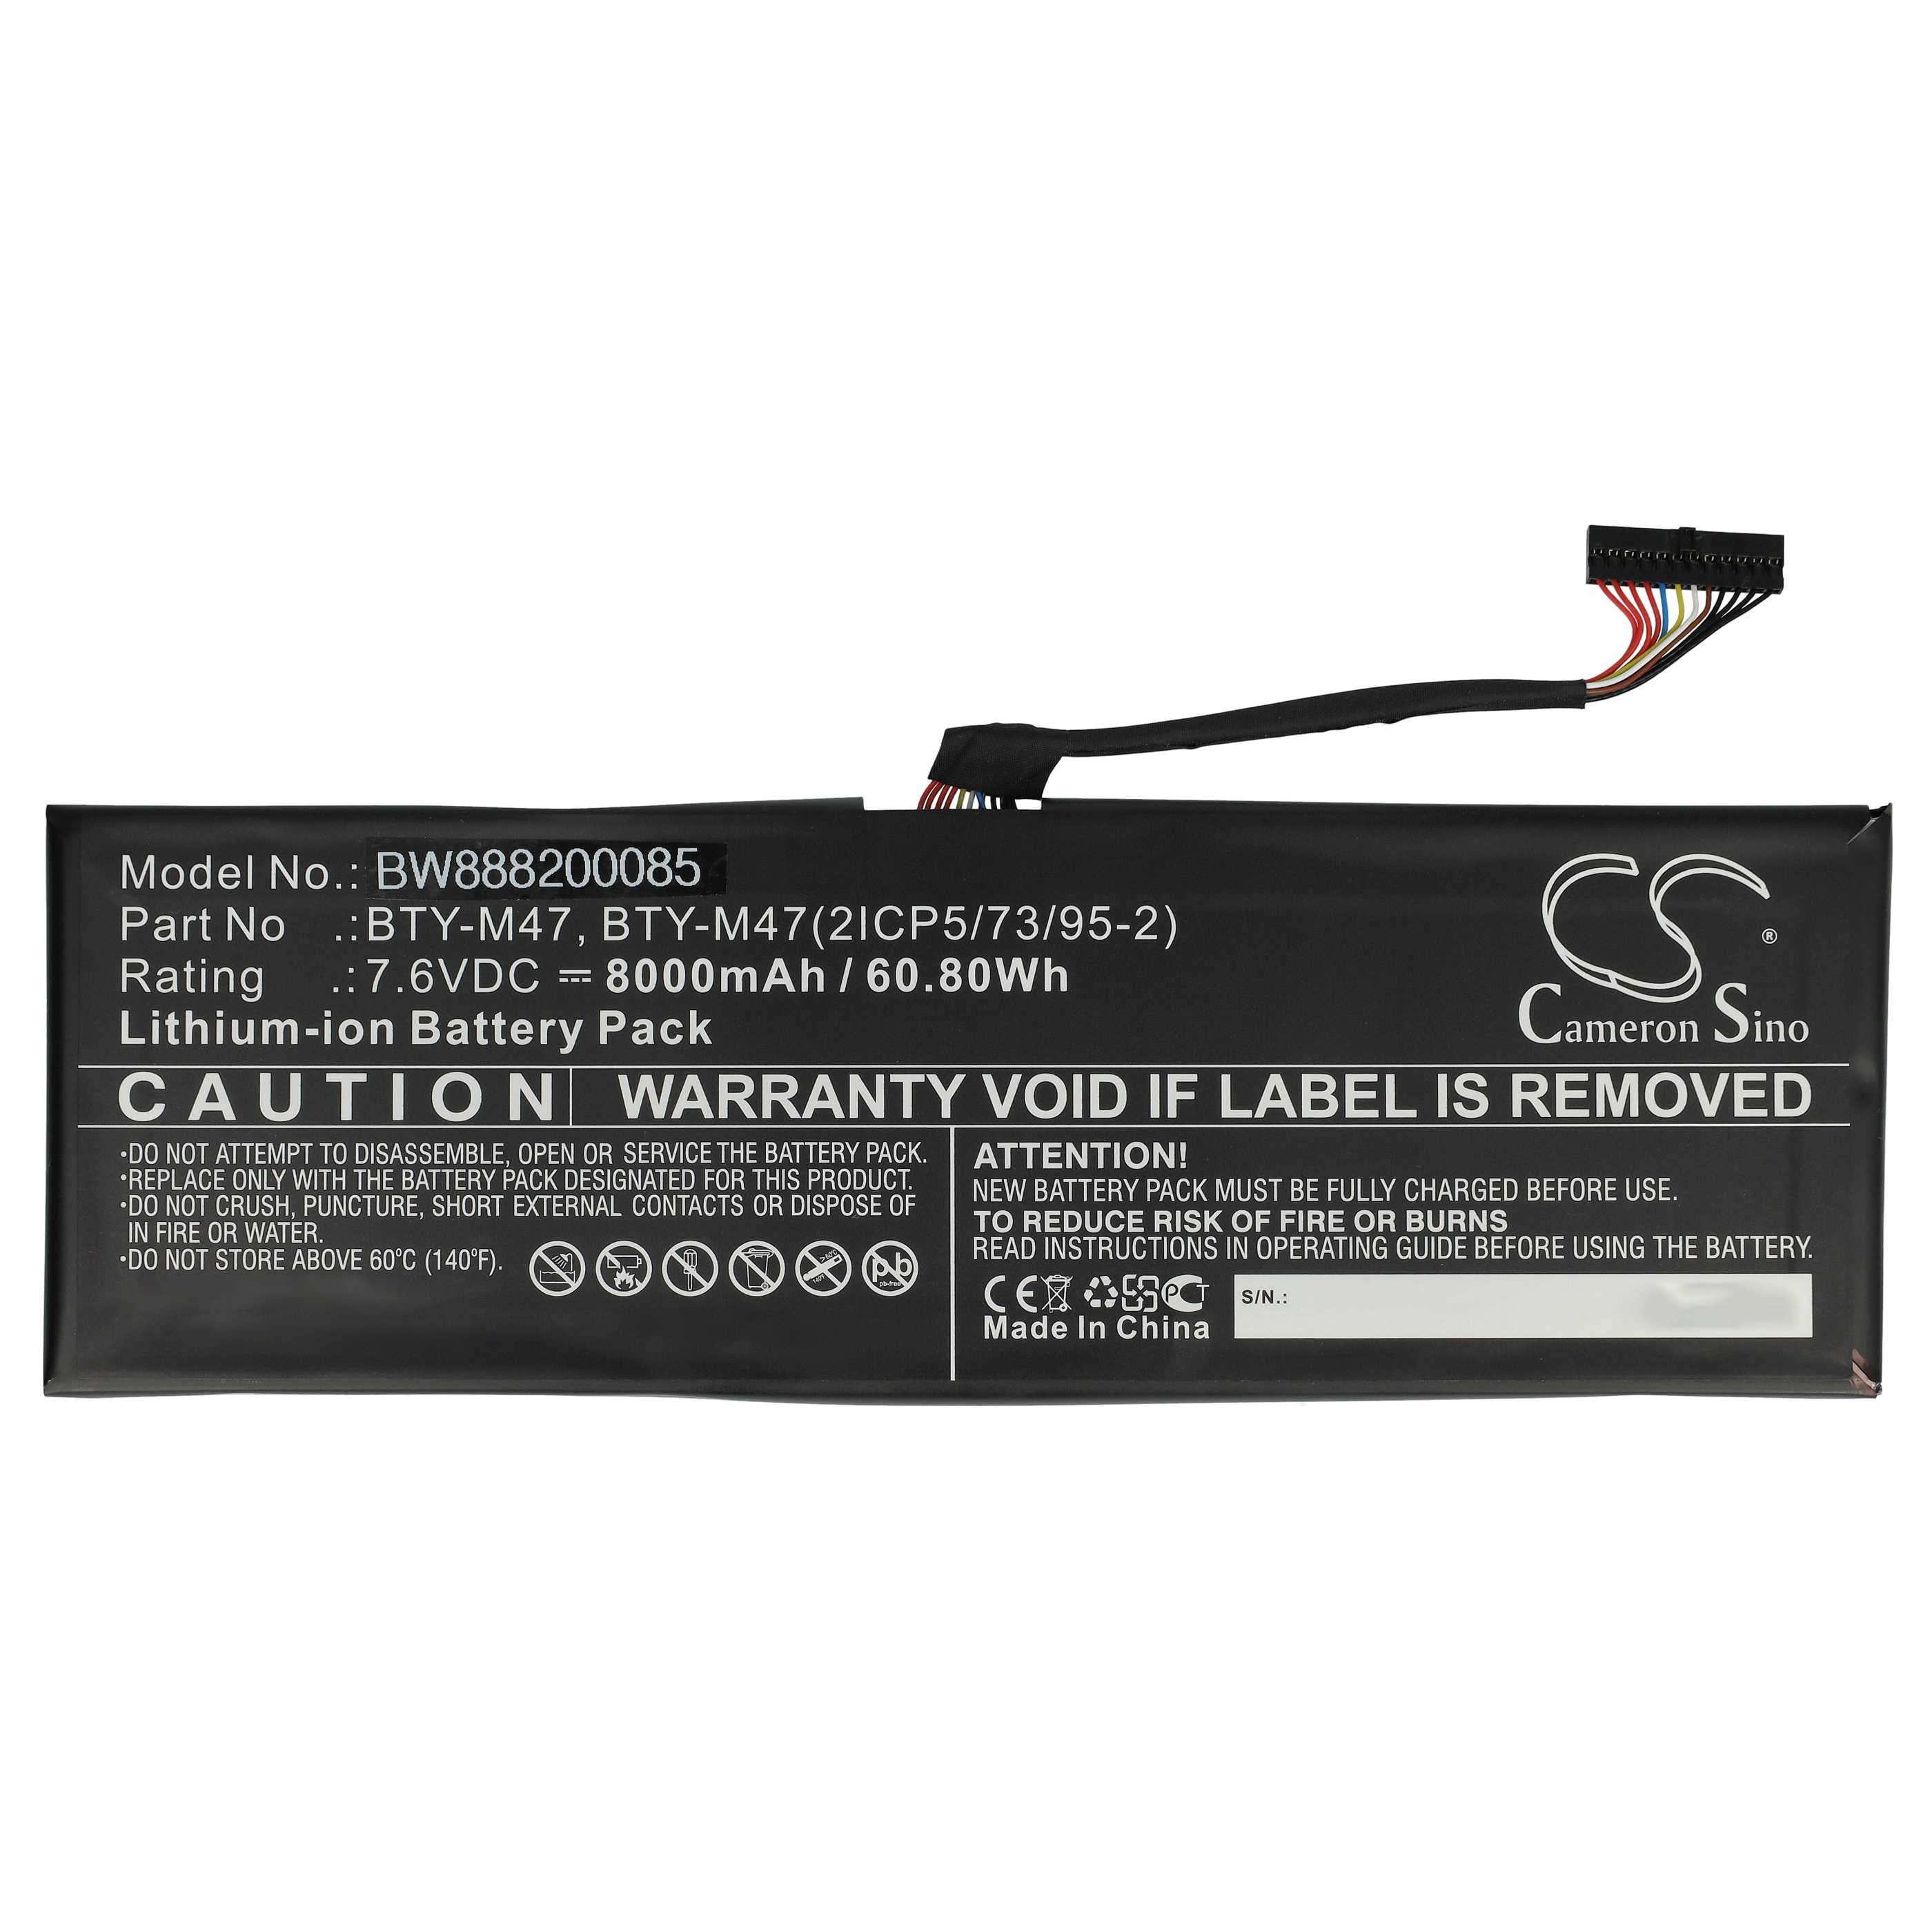 Batterie remplace MSI BTY-M47 pour ordinateur portable - 8060mAh 7,6V Li-ion, noir